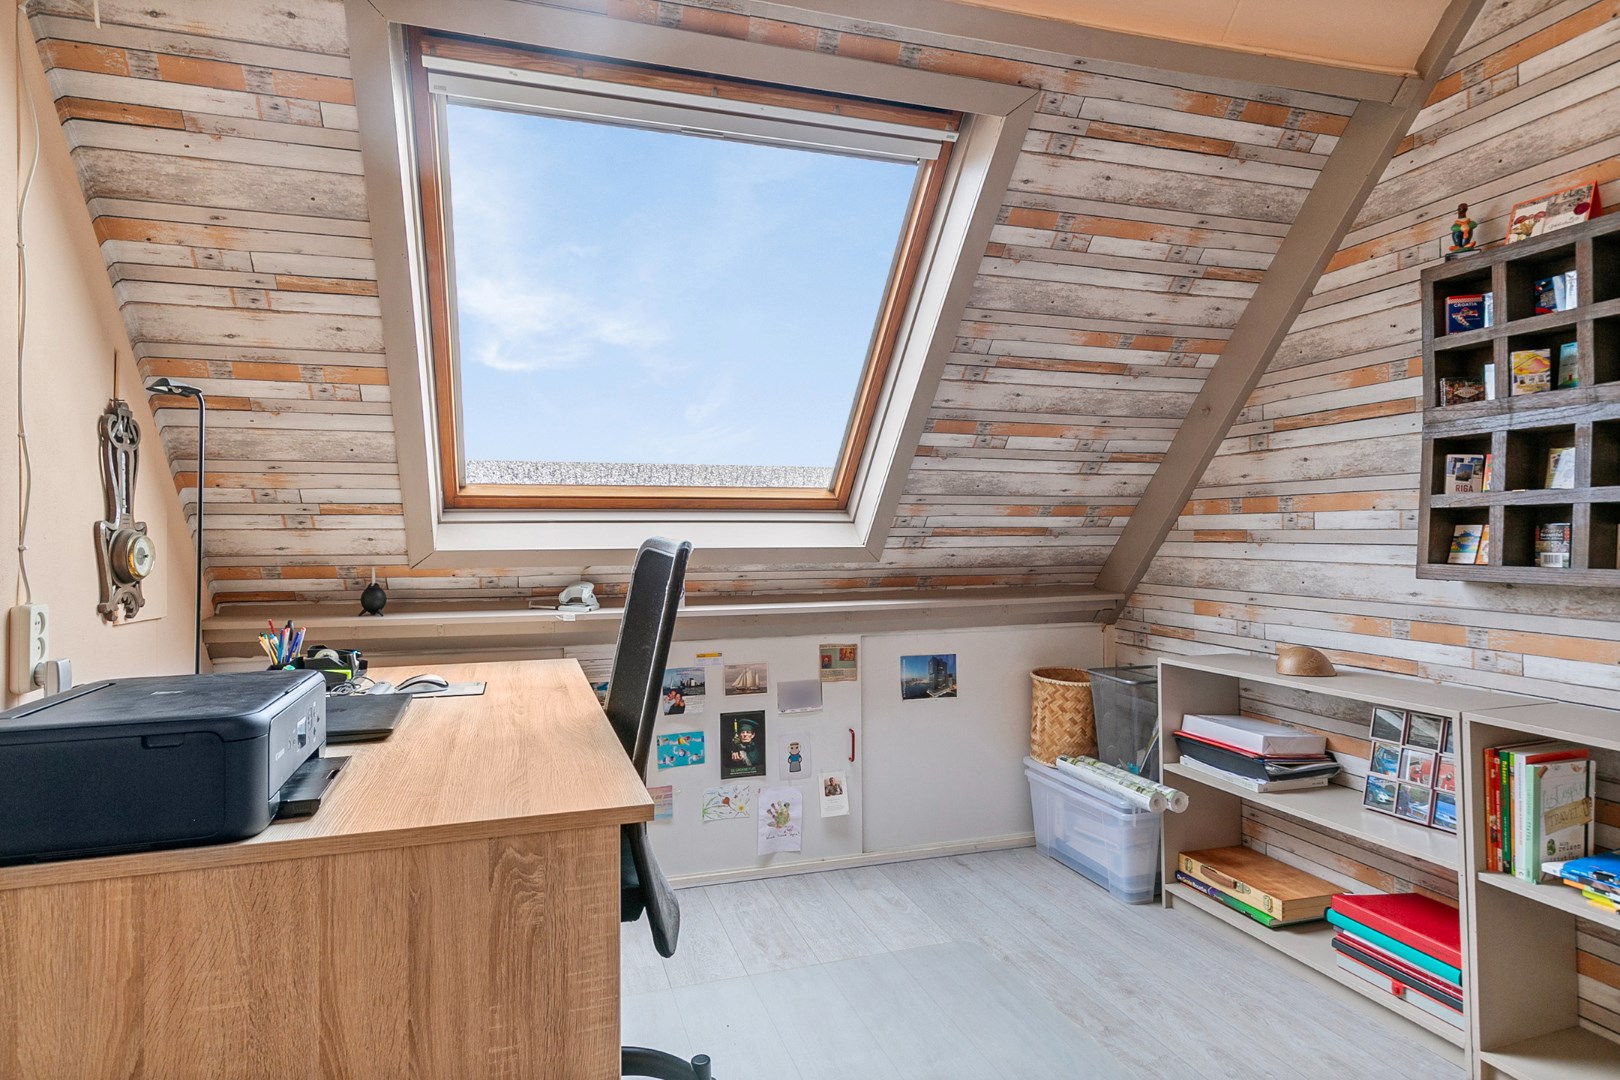 Keurige 5-kamer tussenwoning met een dakkapel aan de voorzijde, zonnepanelen en ruime tuin met houten berging. 